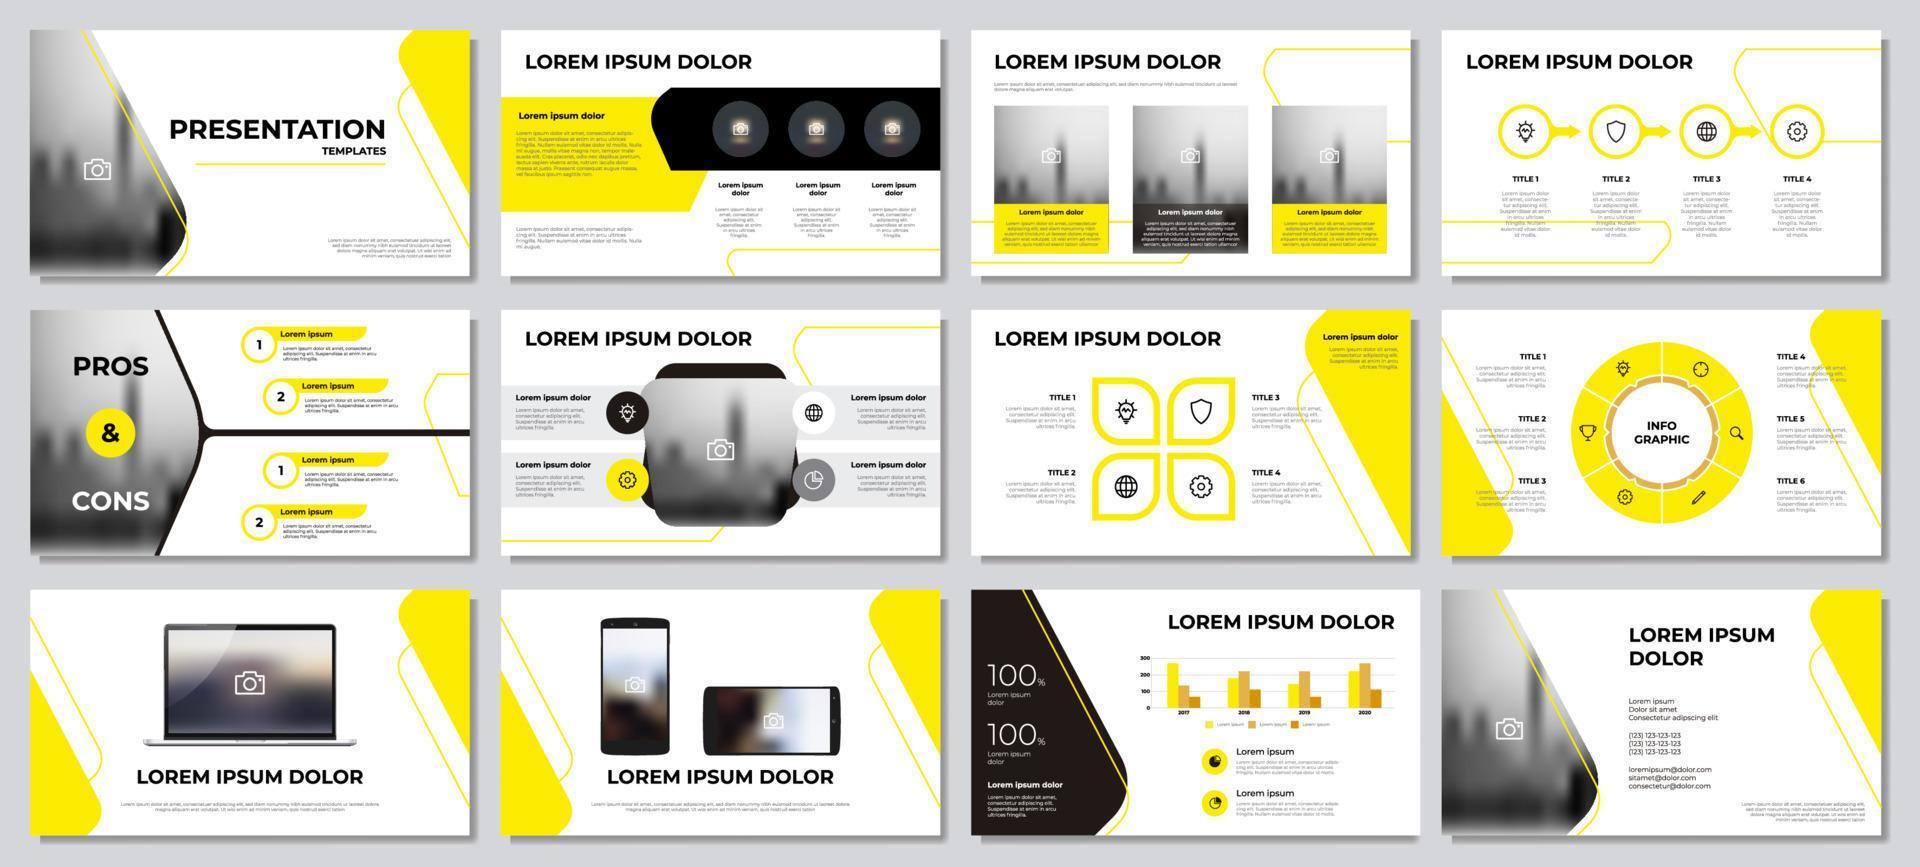 modèles de présentation. élément infographique jaune et noir avec fond blanc. vecteur de modèle de mise en page pour les affaires, le marketing, etc.